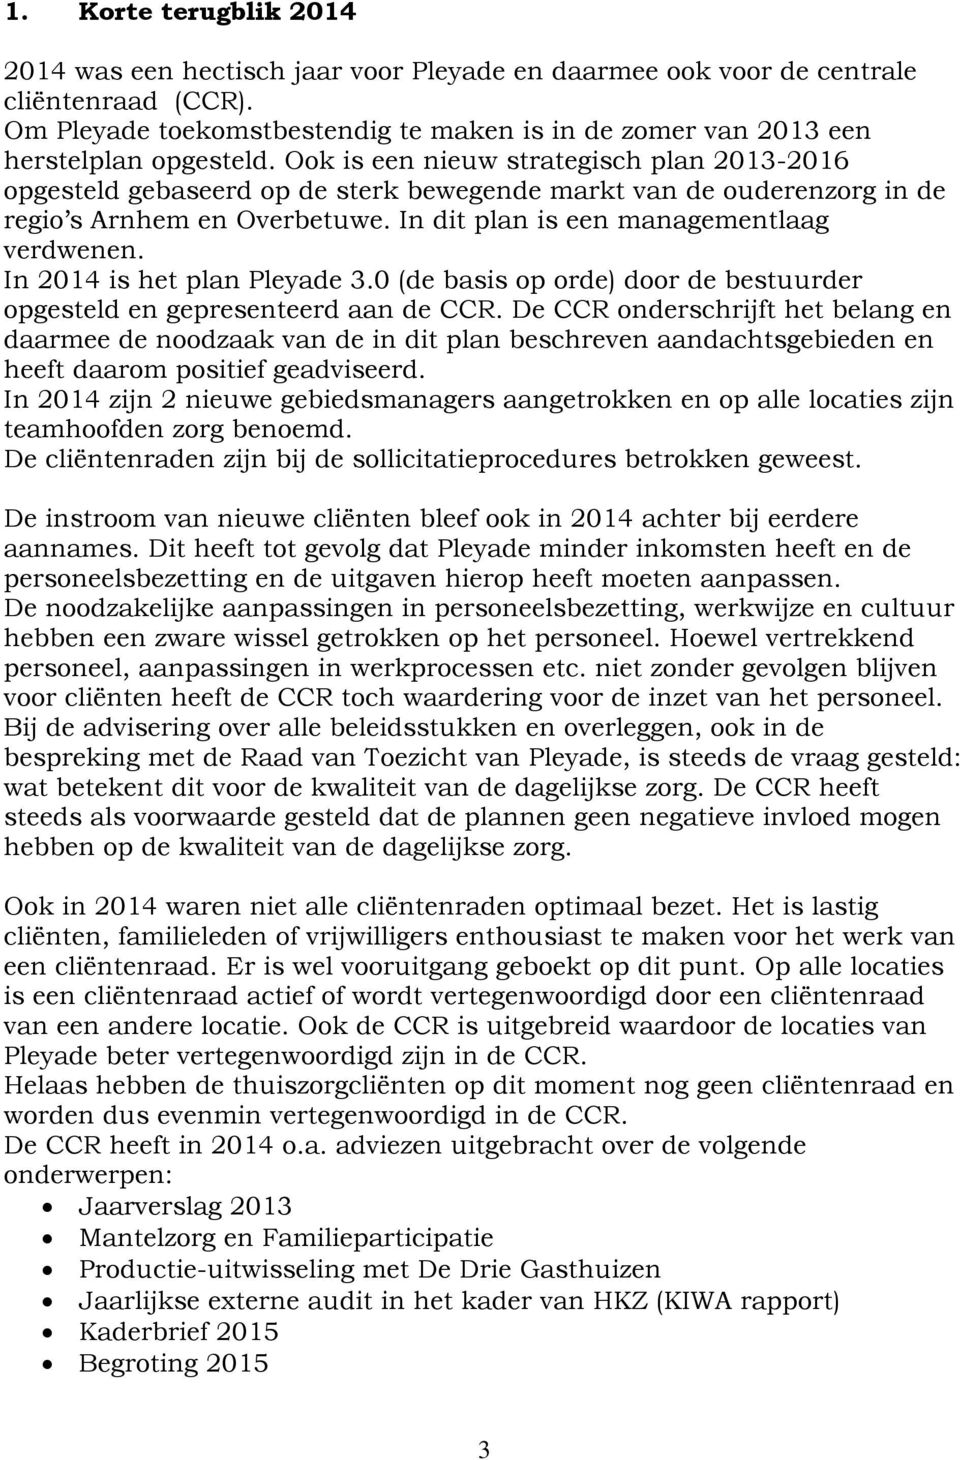 Ook is een nieuw strategisch plan 2013-2016 opgesteld gebaseerd op de sterk bewegende markt van de ouderenzorg in de regio s Arnhem en Overbetuwe. In dit plan is een managementlaag verdwenen.